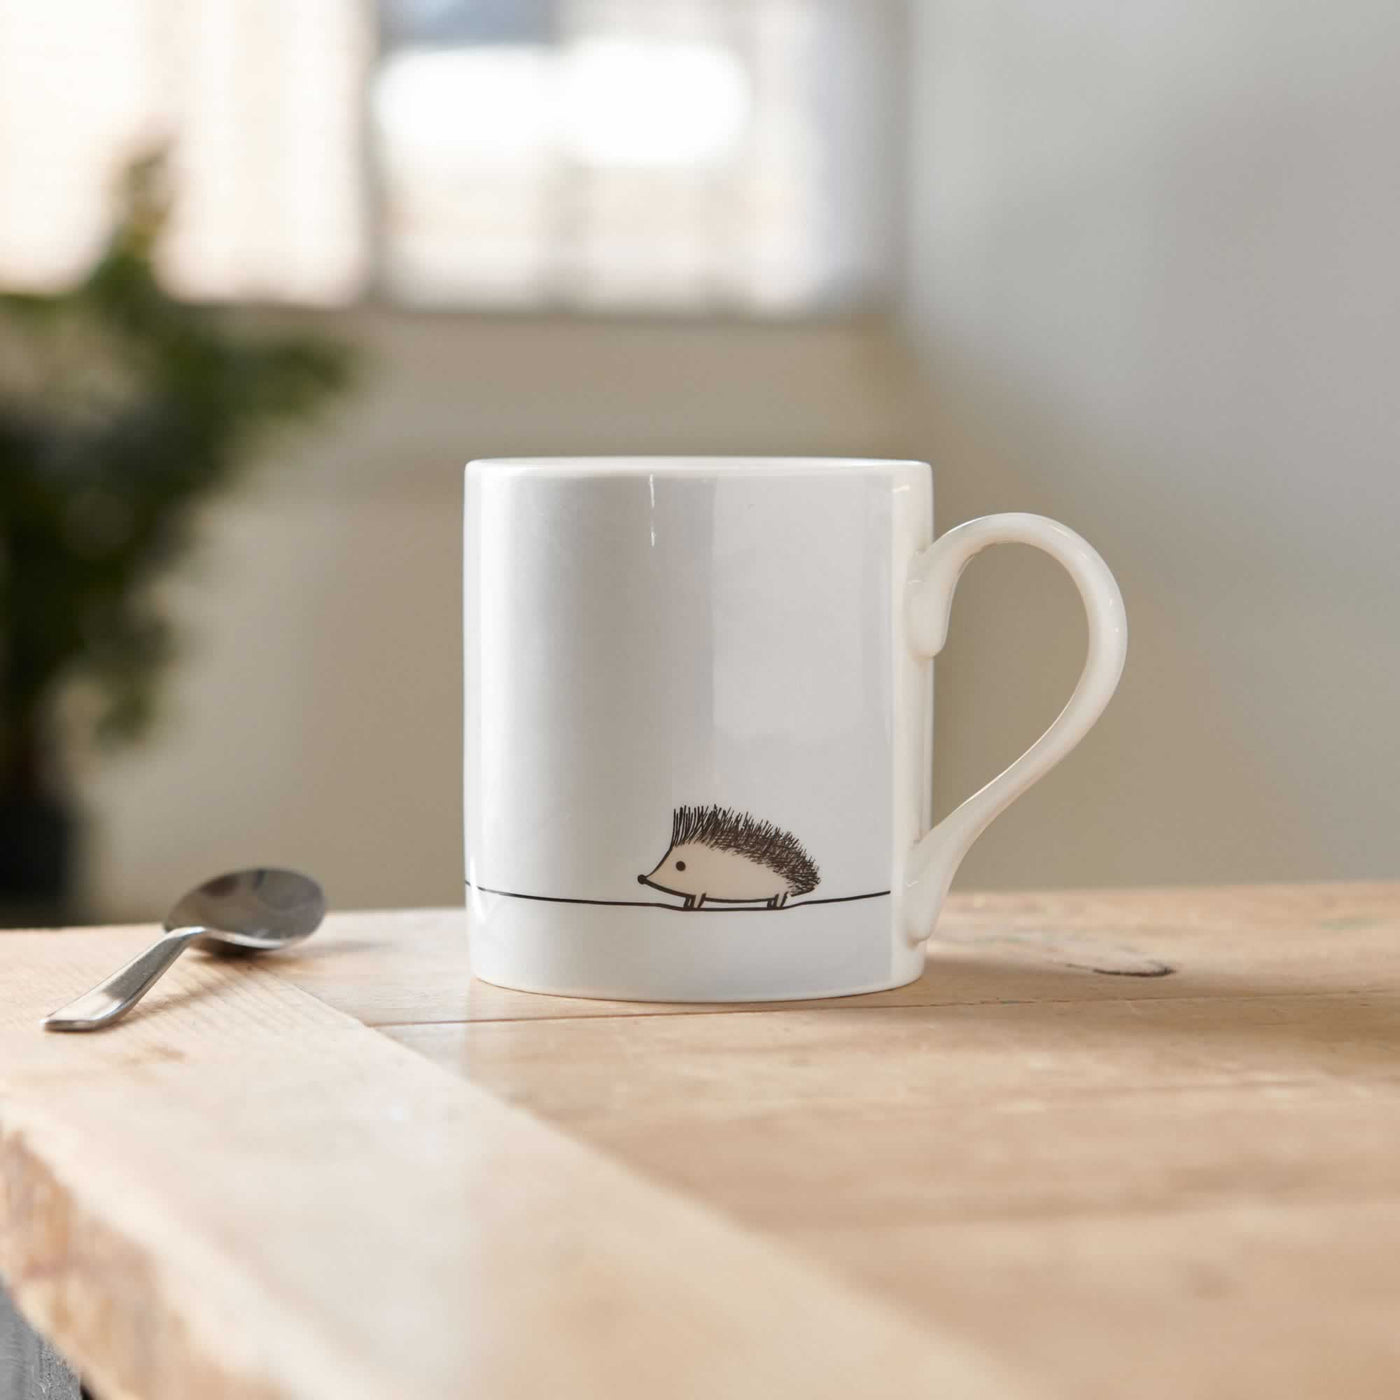 Hedgehog Mug on table